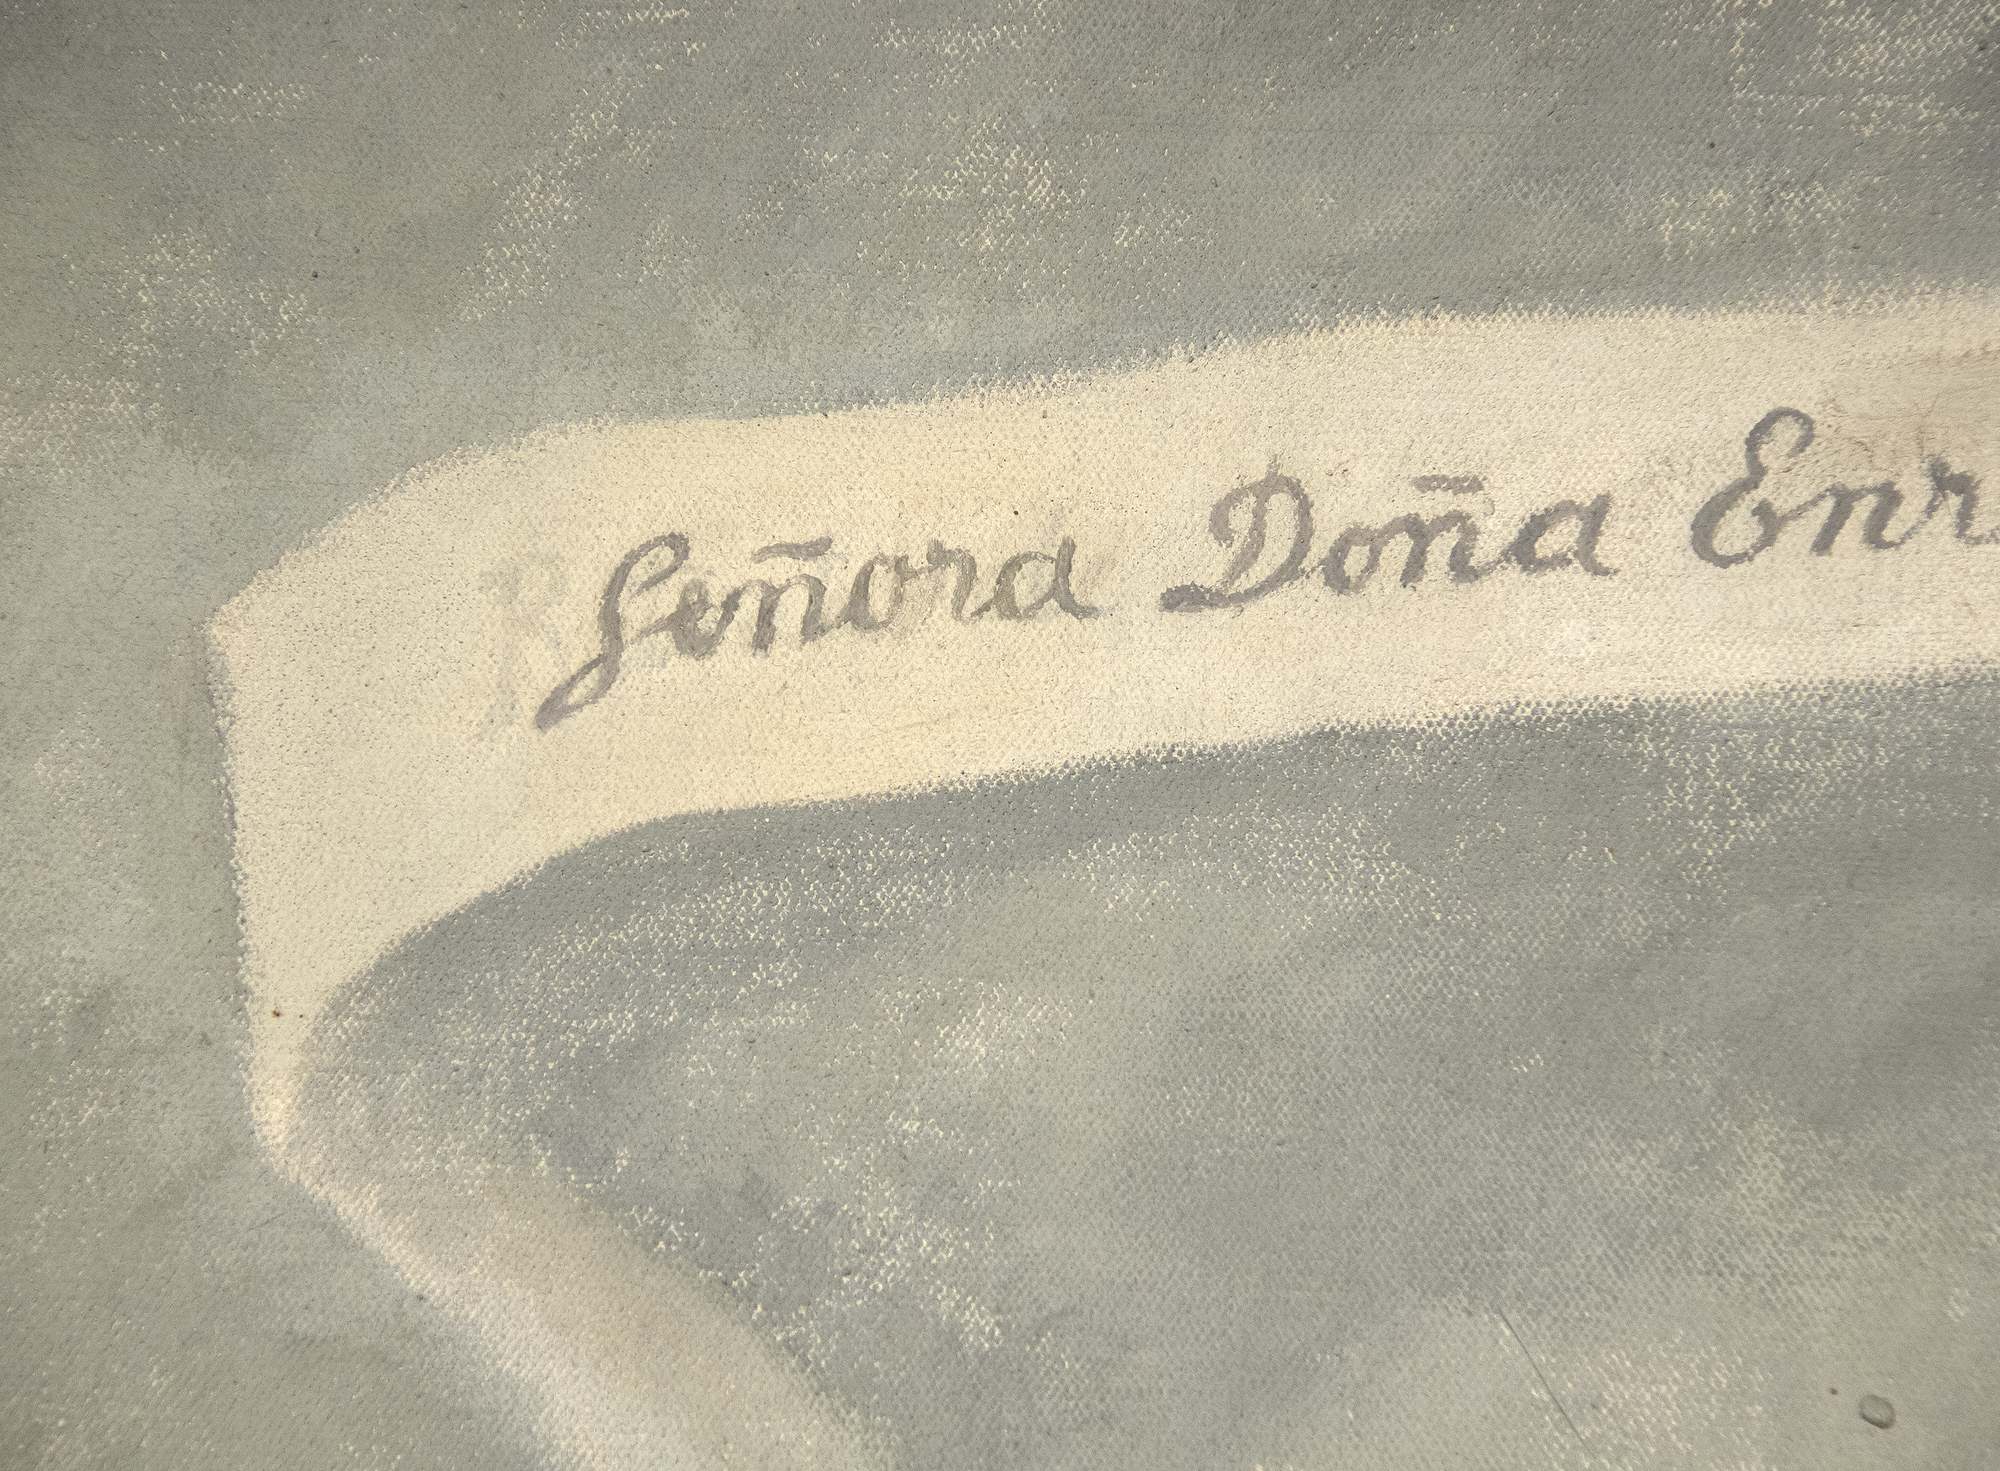 DIEGO RIVERA - Portrait de Enriqueta G. Dávila - huile sur toile - 79 1/8 x 48 3/8 in.